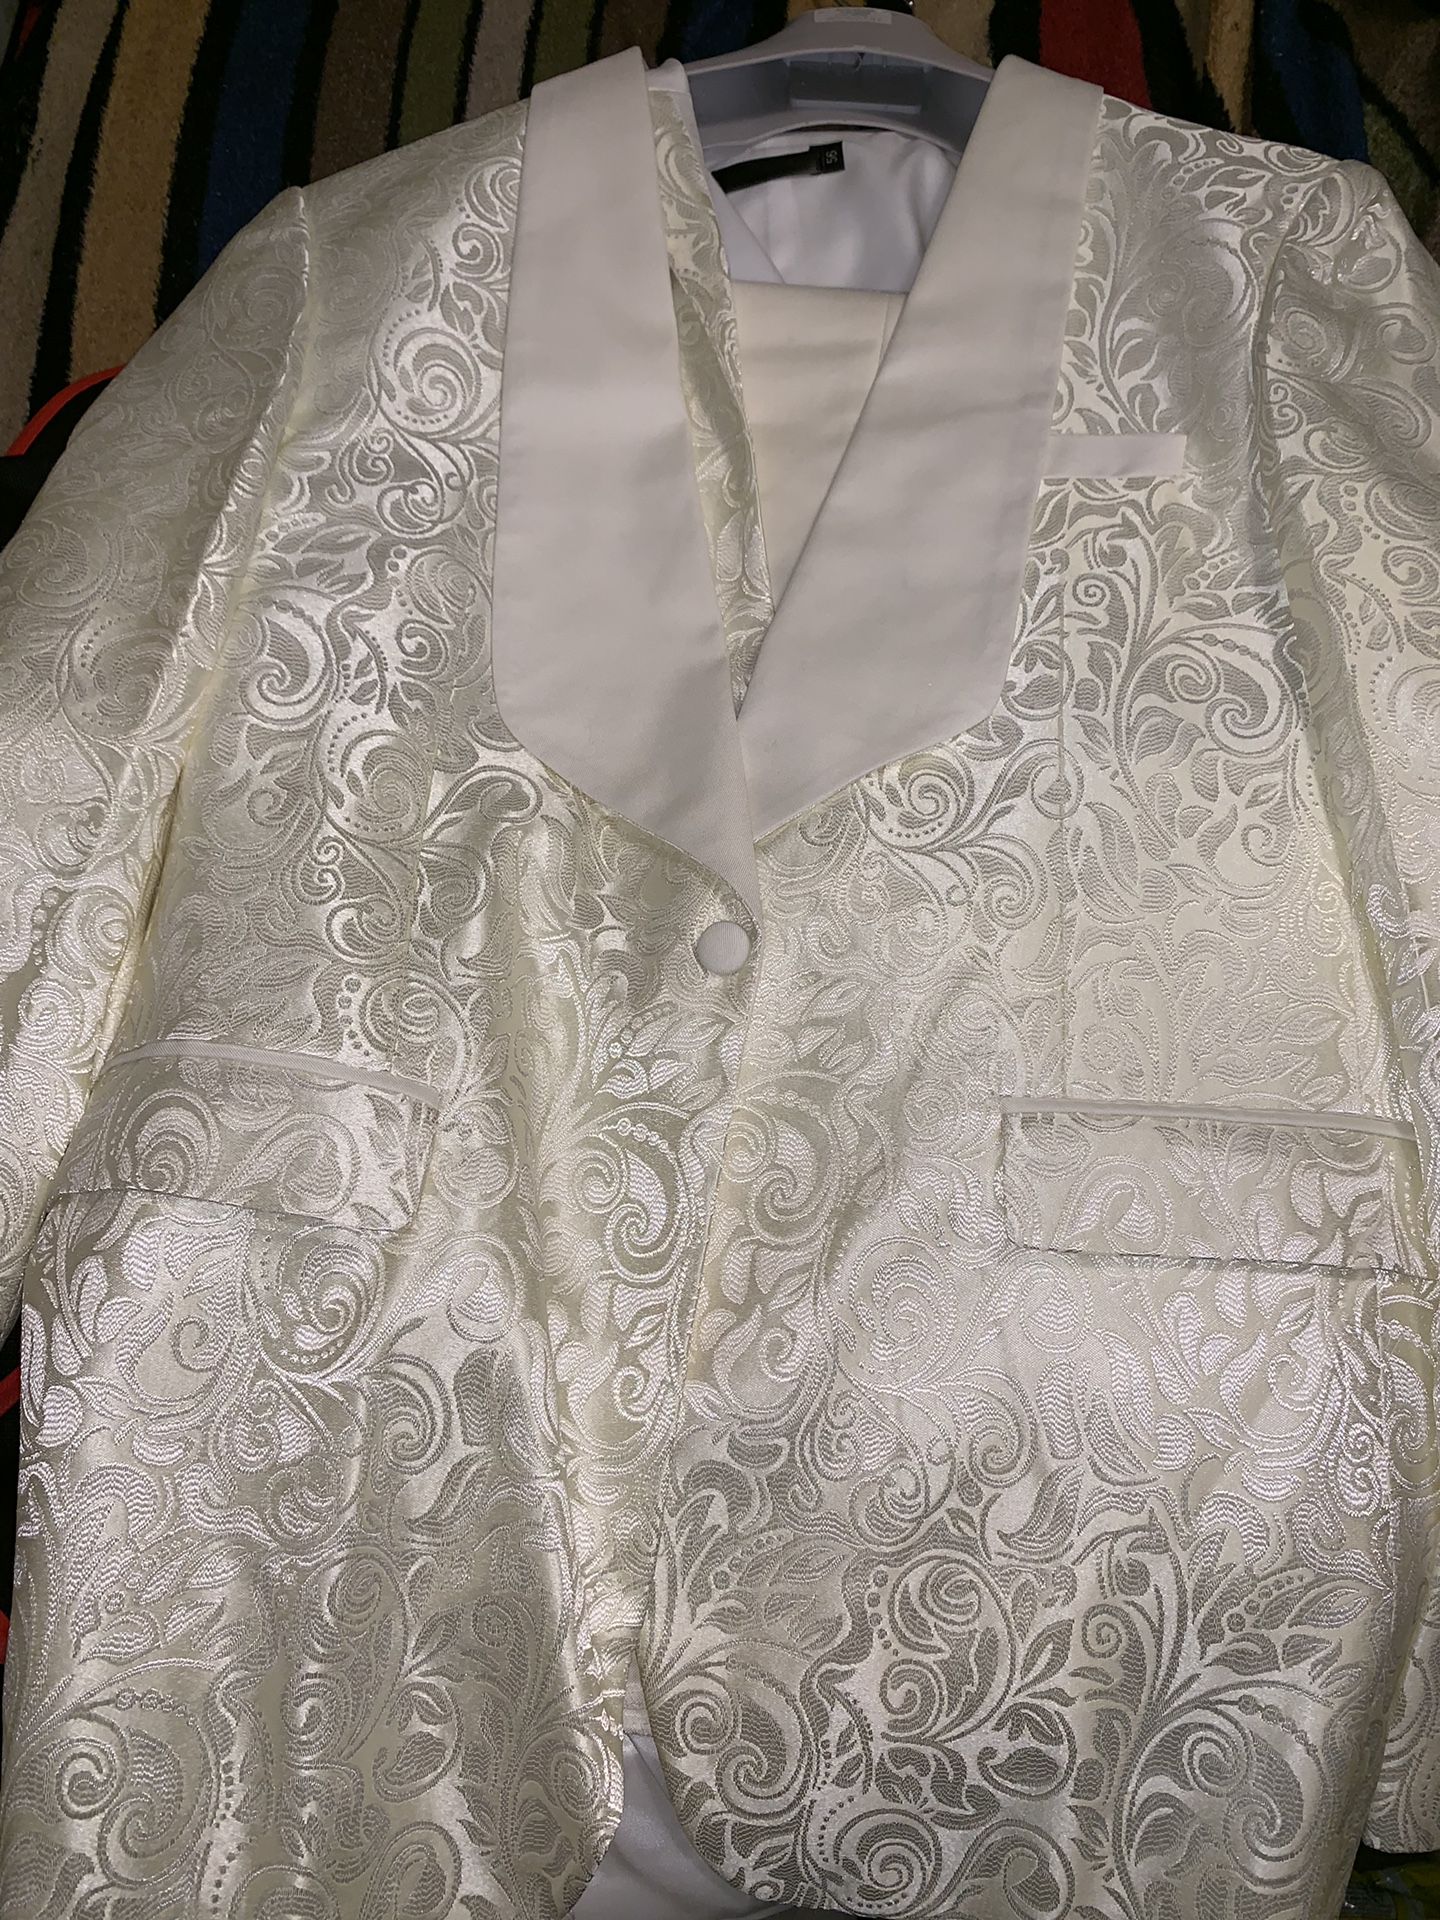 Ivory formal dinner jacket w/ matching vest